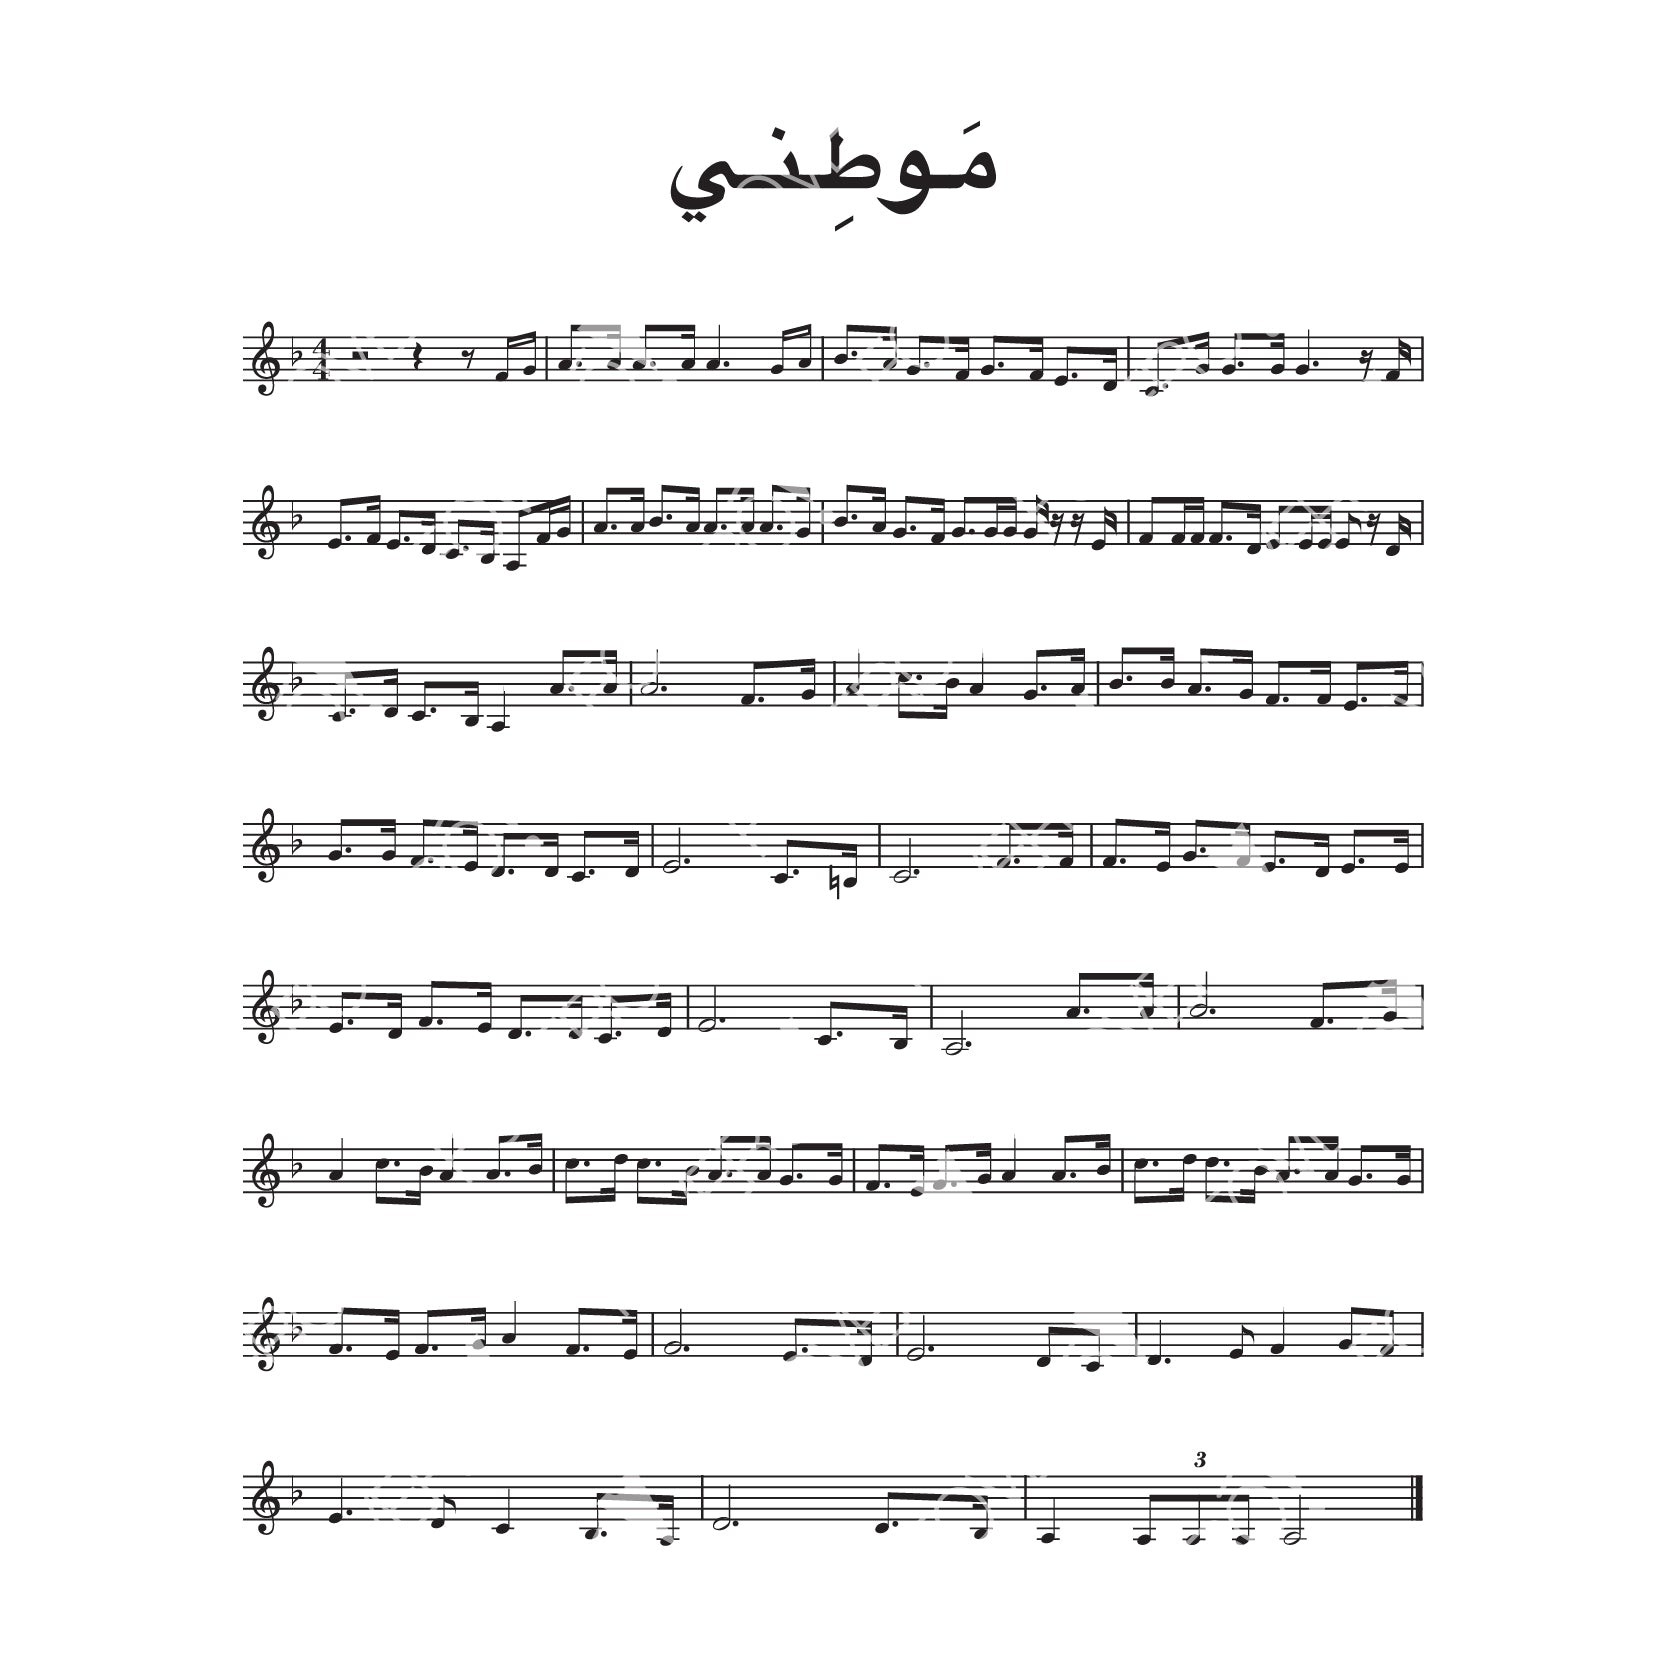 Mawtini (Palestinian national anthem)